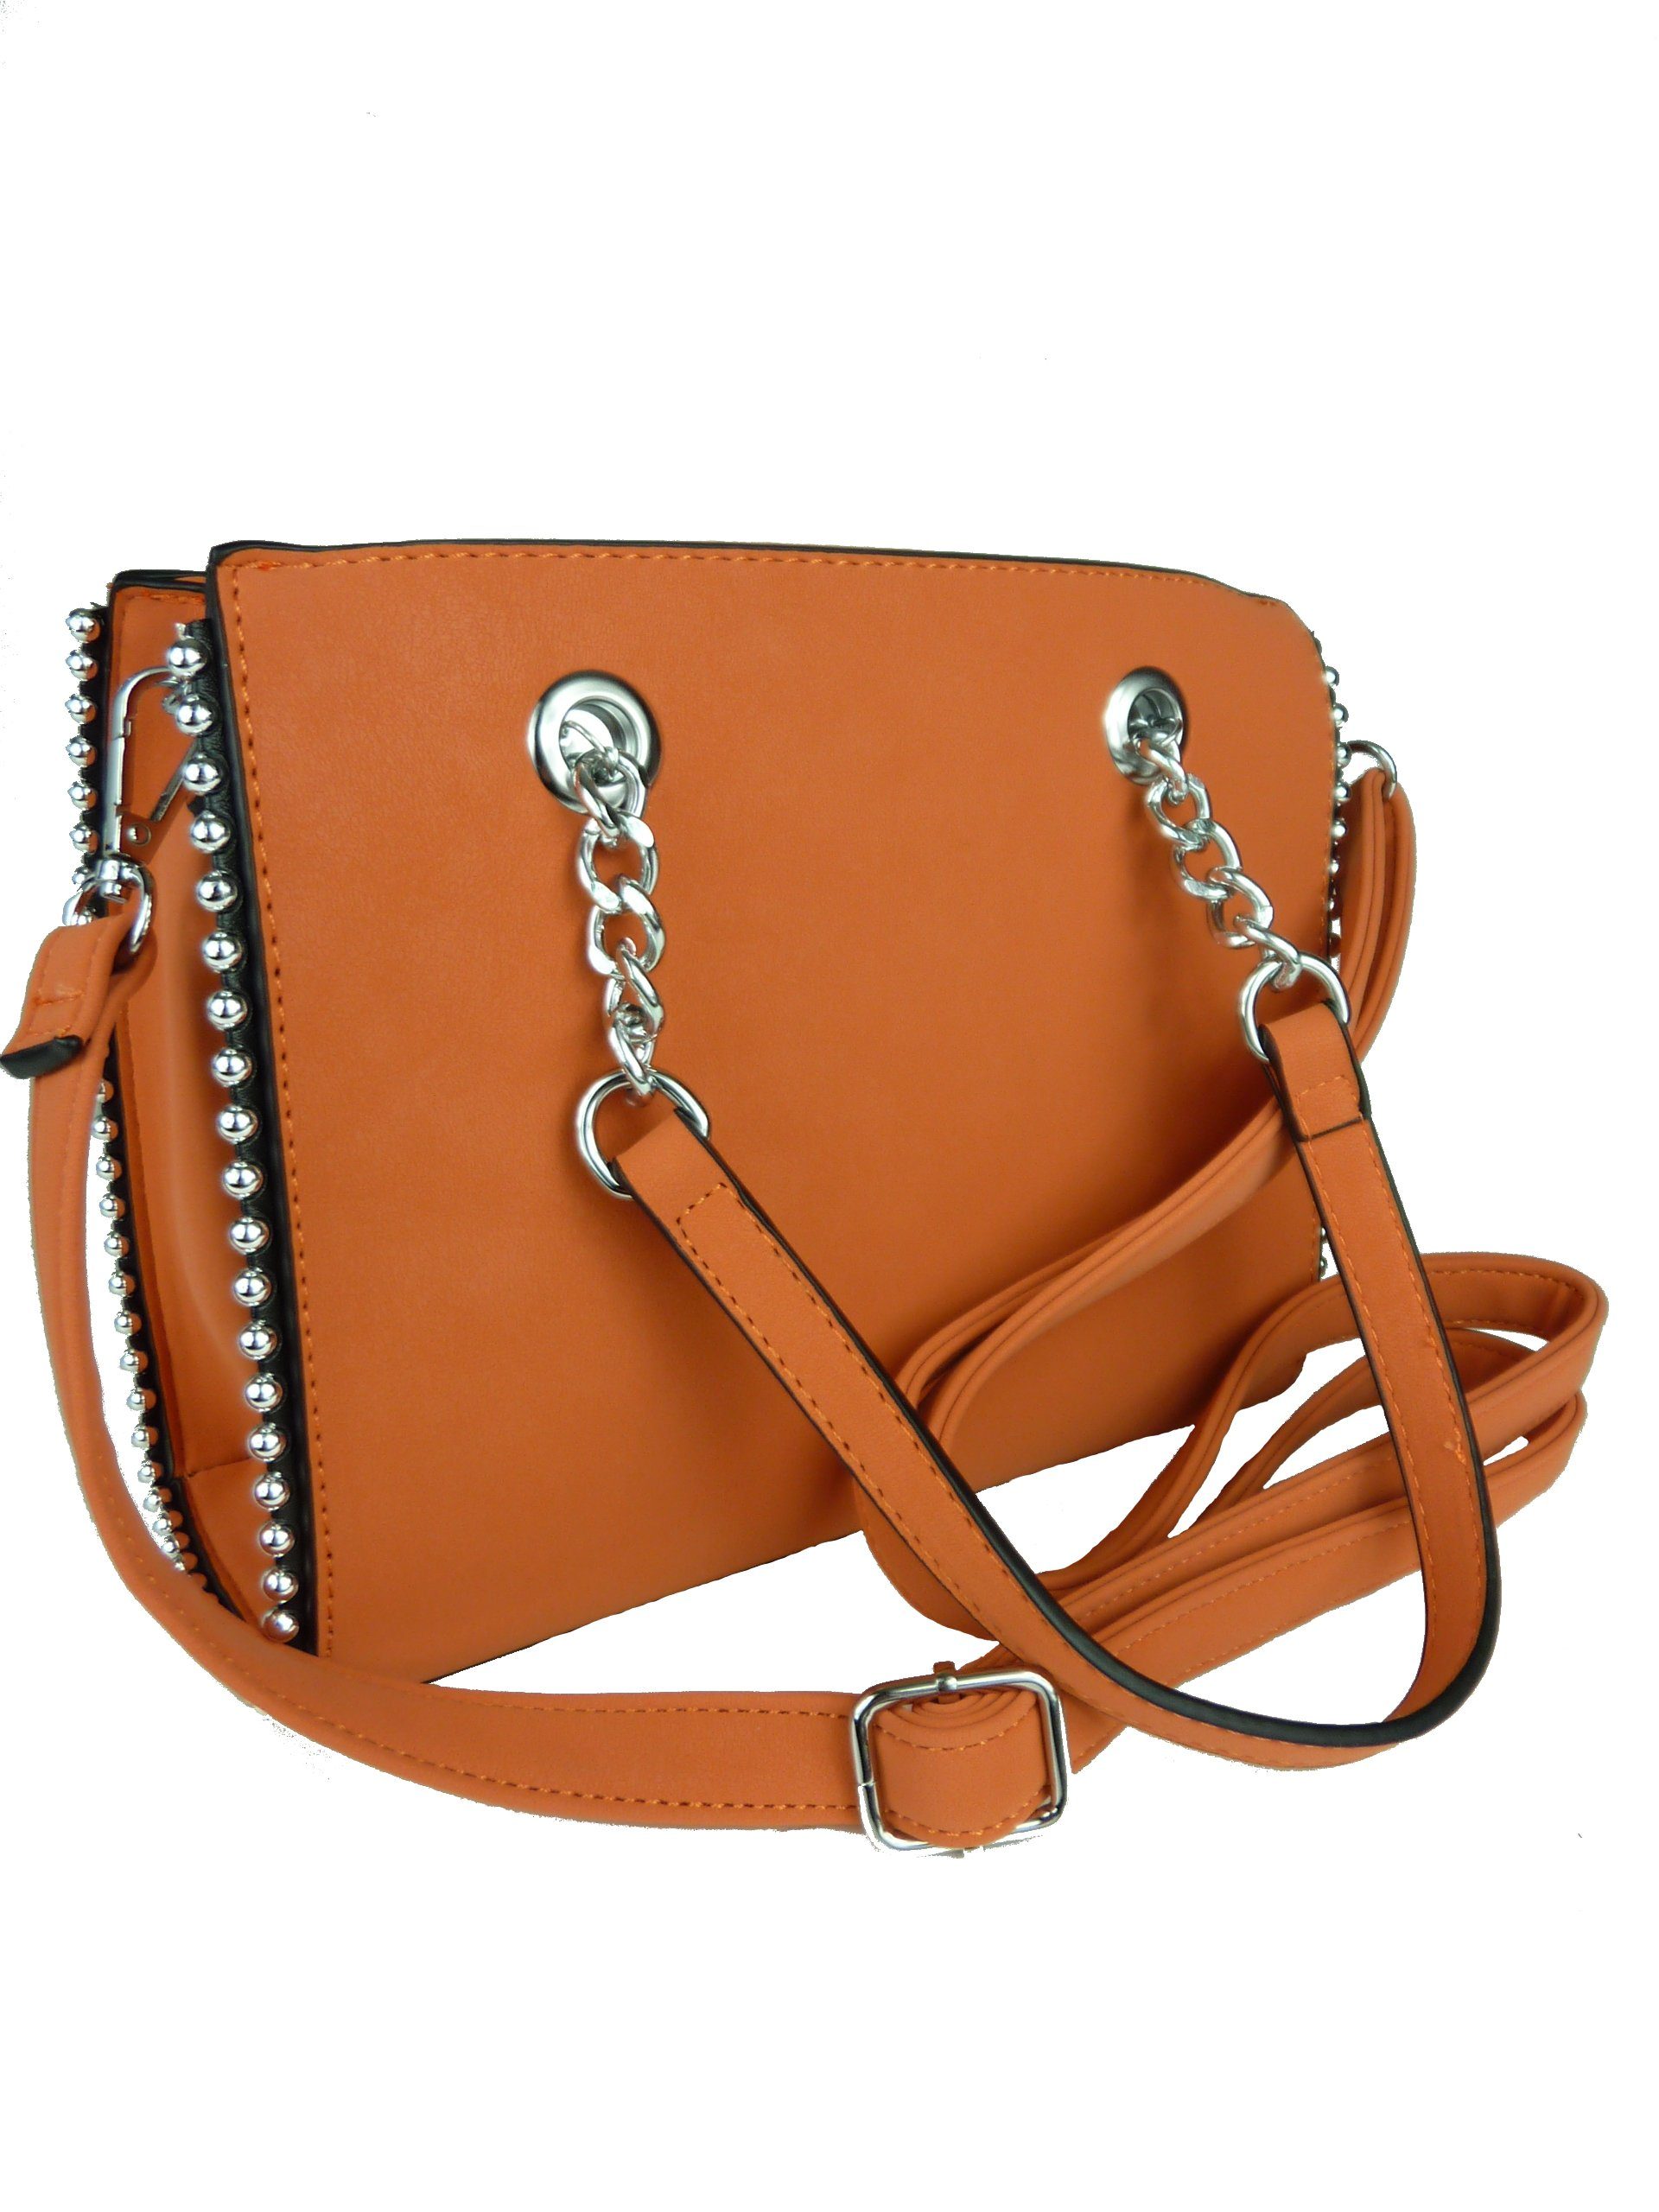 Taschen4life Clutch Damen Handtasche mit Nieten und Kette G88335, lange Tragegriffe & abnehmbarer Schulter Trageriemen orange | Trachtentaschen